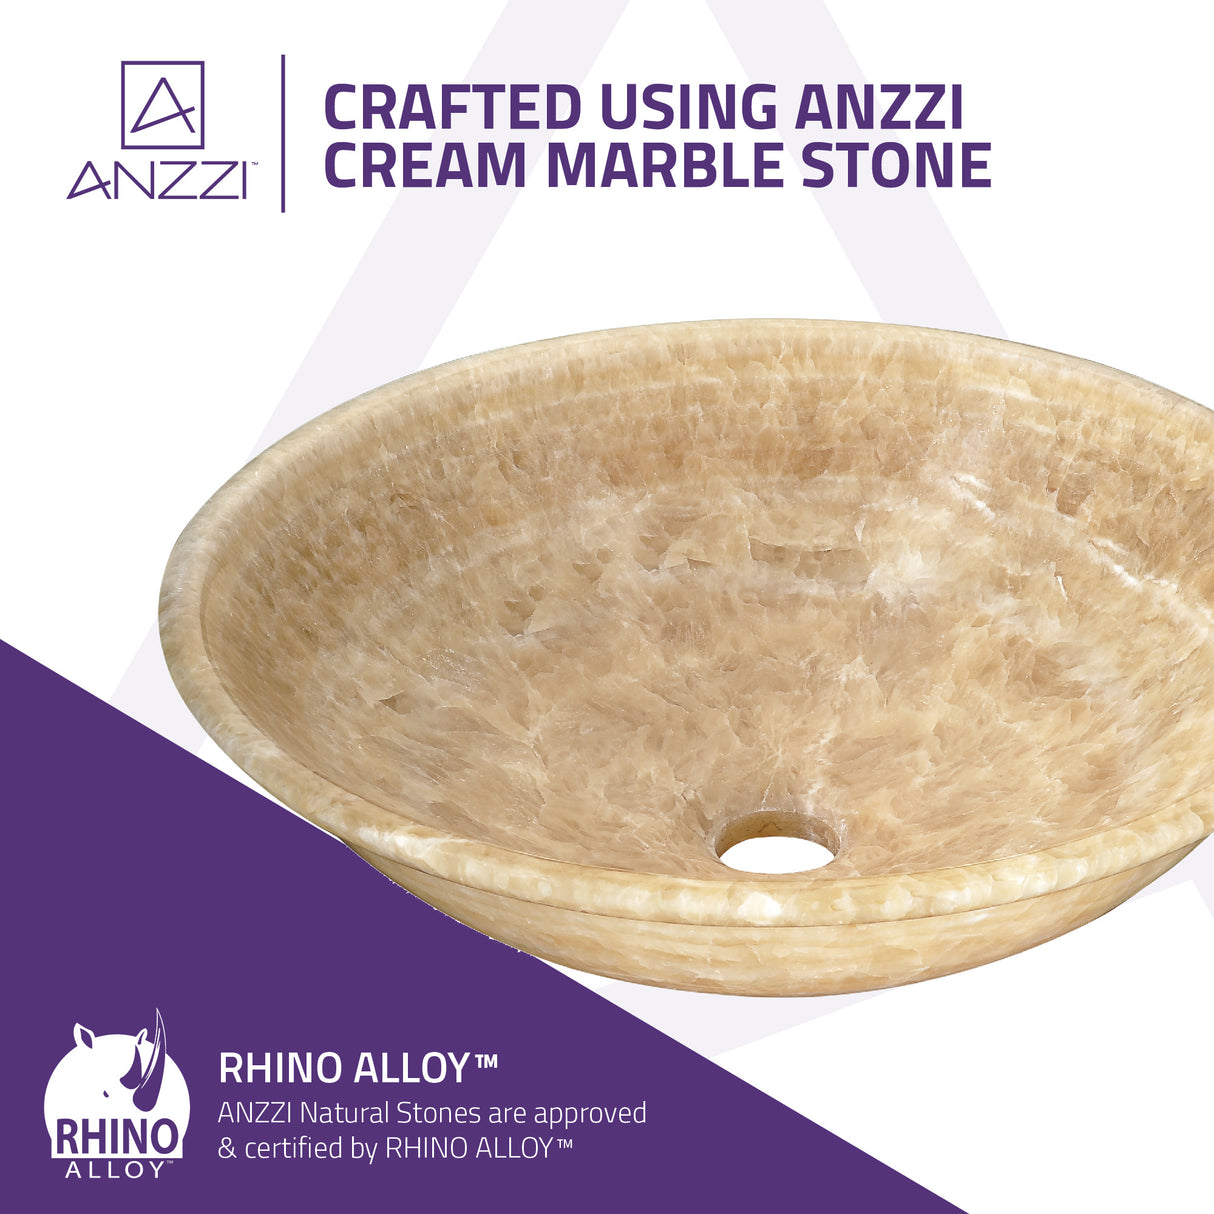 ANZZI LS-AZ317 Flavescent Crown Natural Stone Vessel Sink in Cream Jade